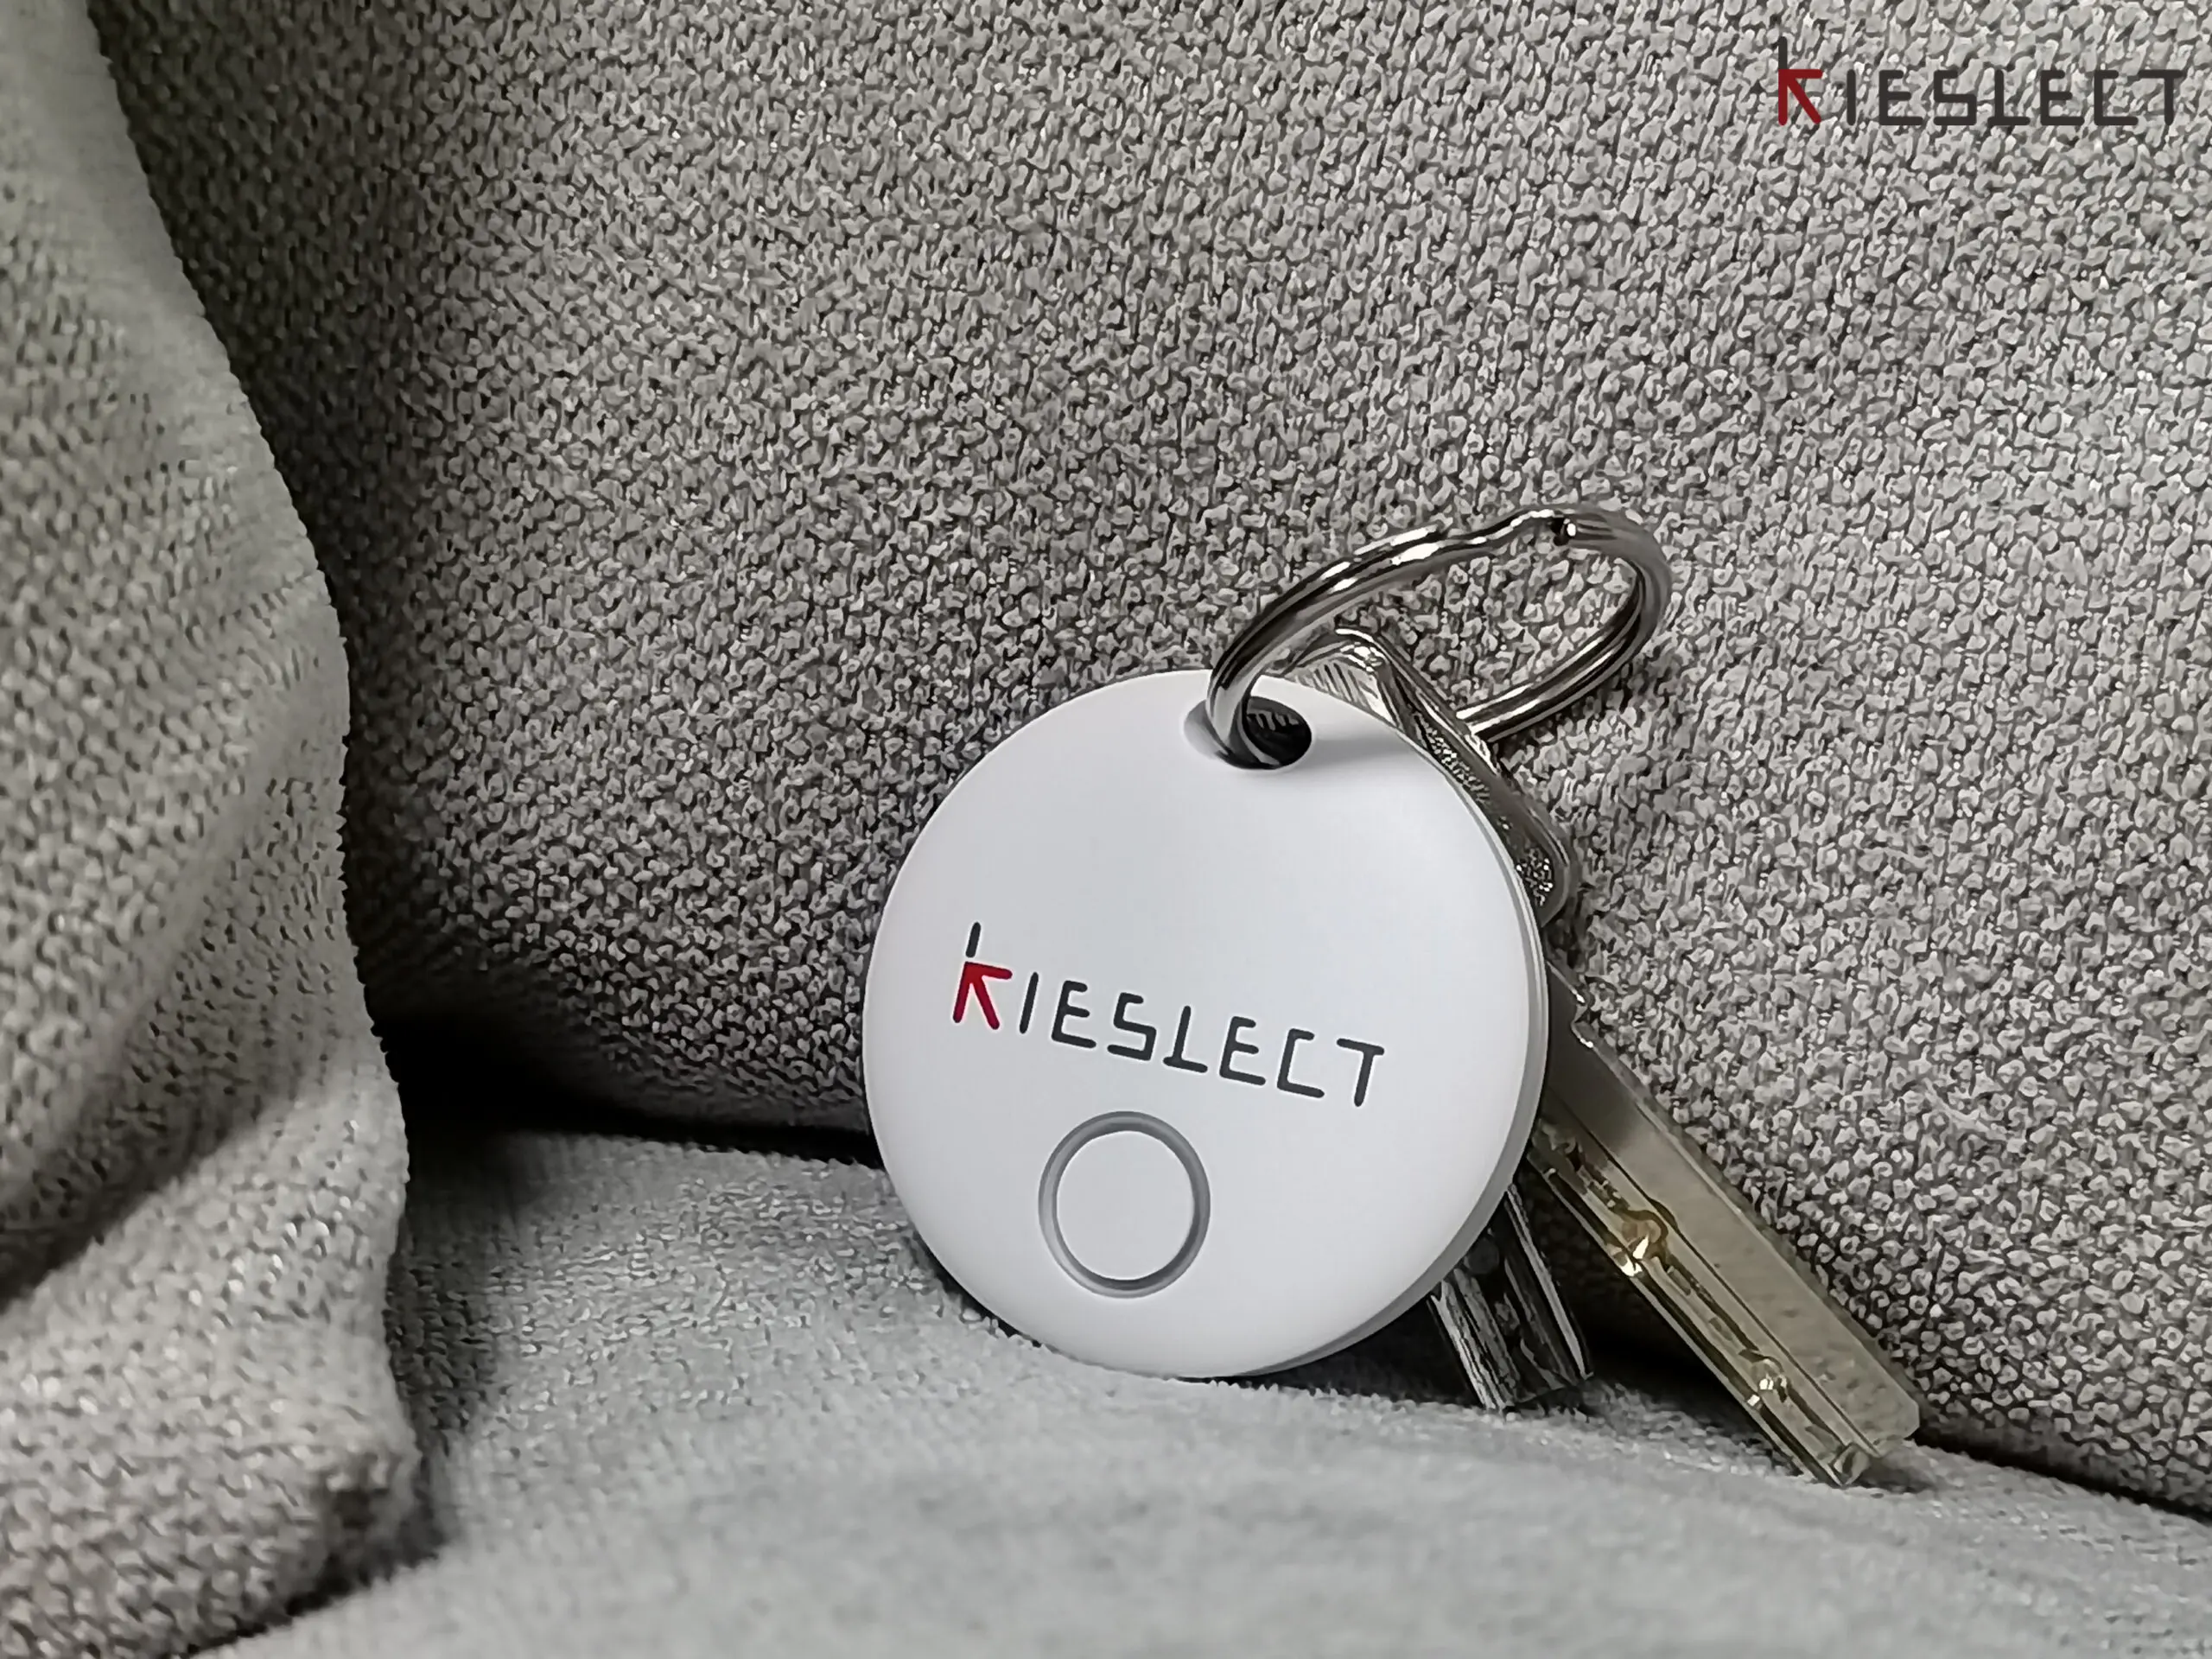 Kieslect Smart Tag de IMILab, perder las llaves será cosa del pasado